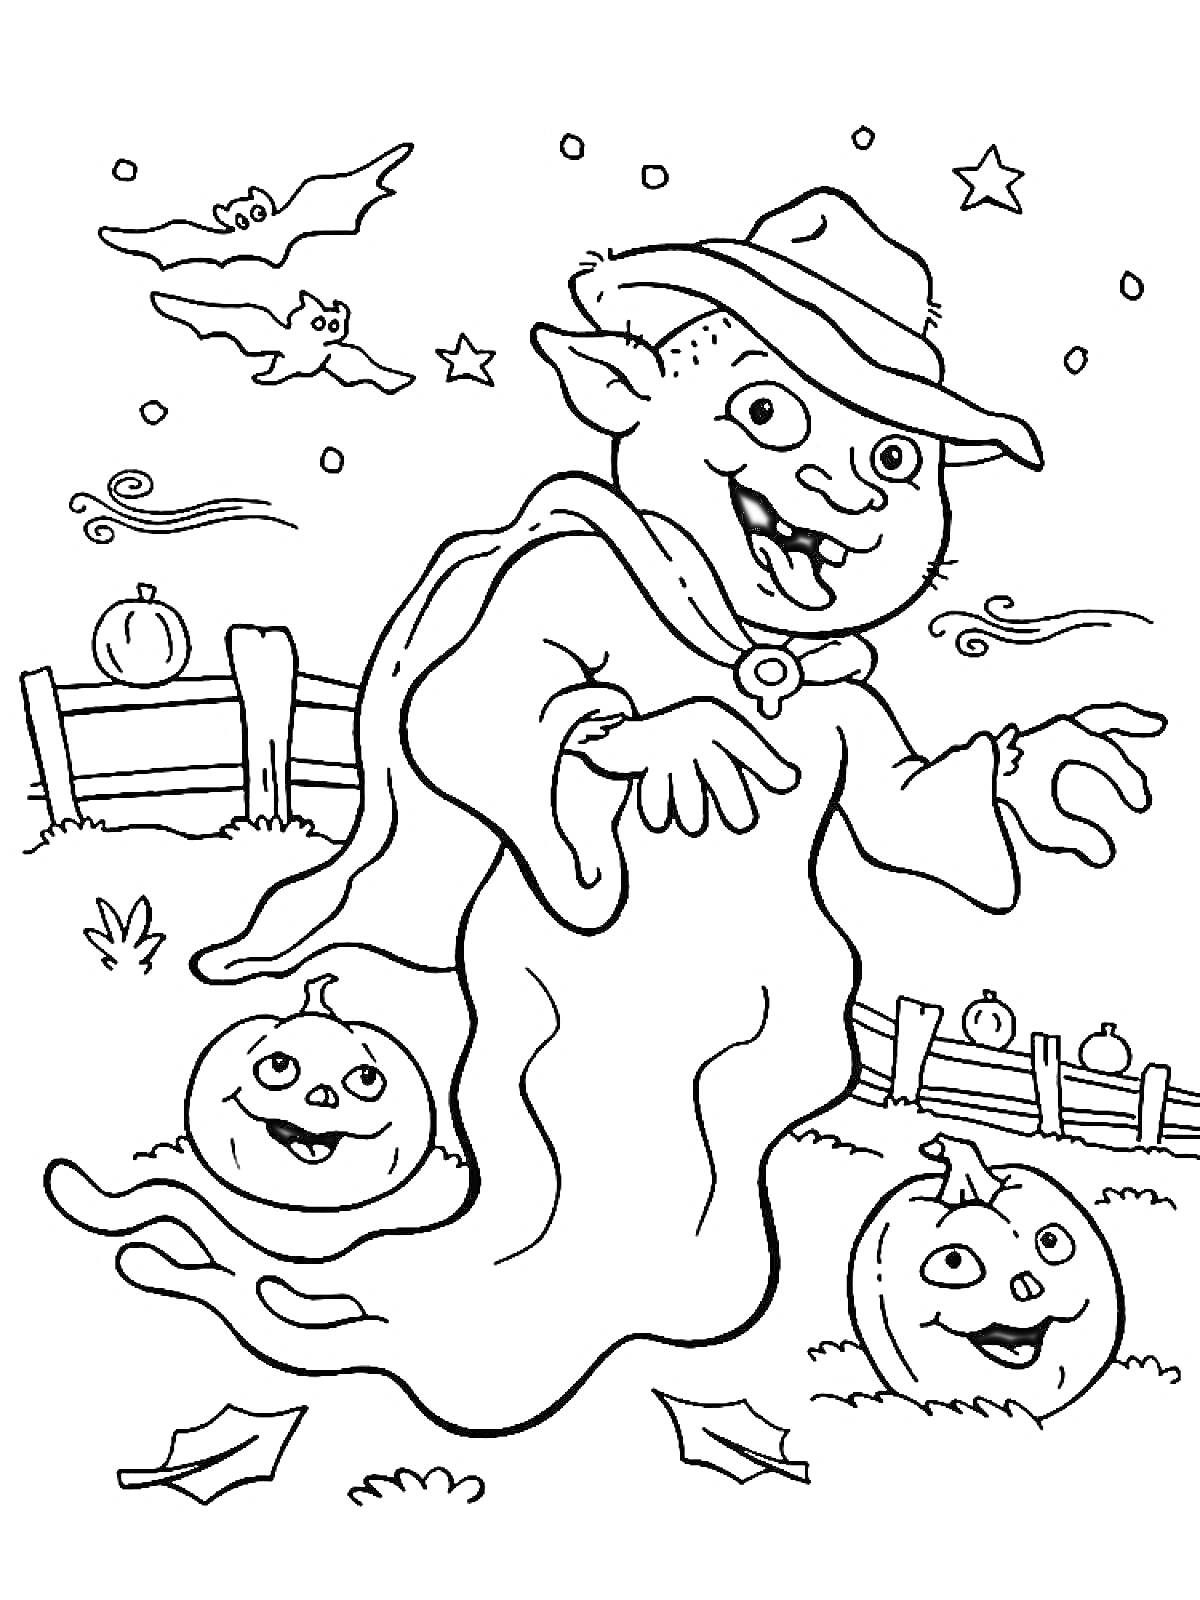 Раскраска Фигура призрака с шляпой, две тыквы с лицами, два летучих мыша, забор, фон с маленькими звёздами и осенними листьями